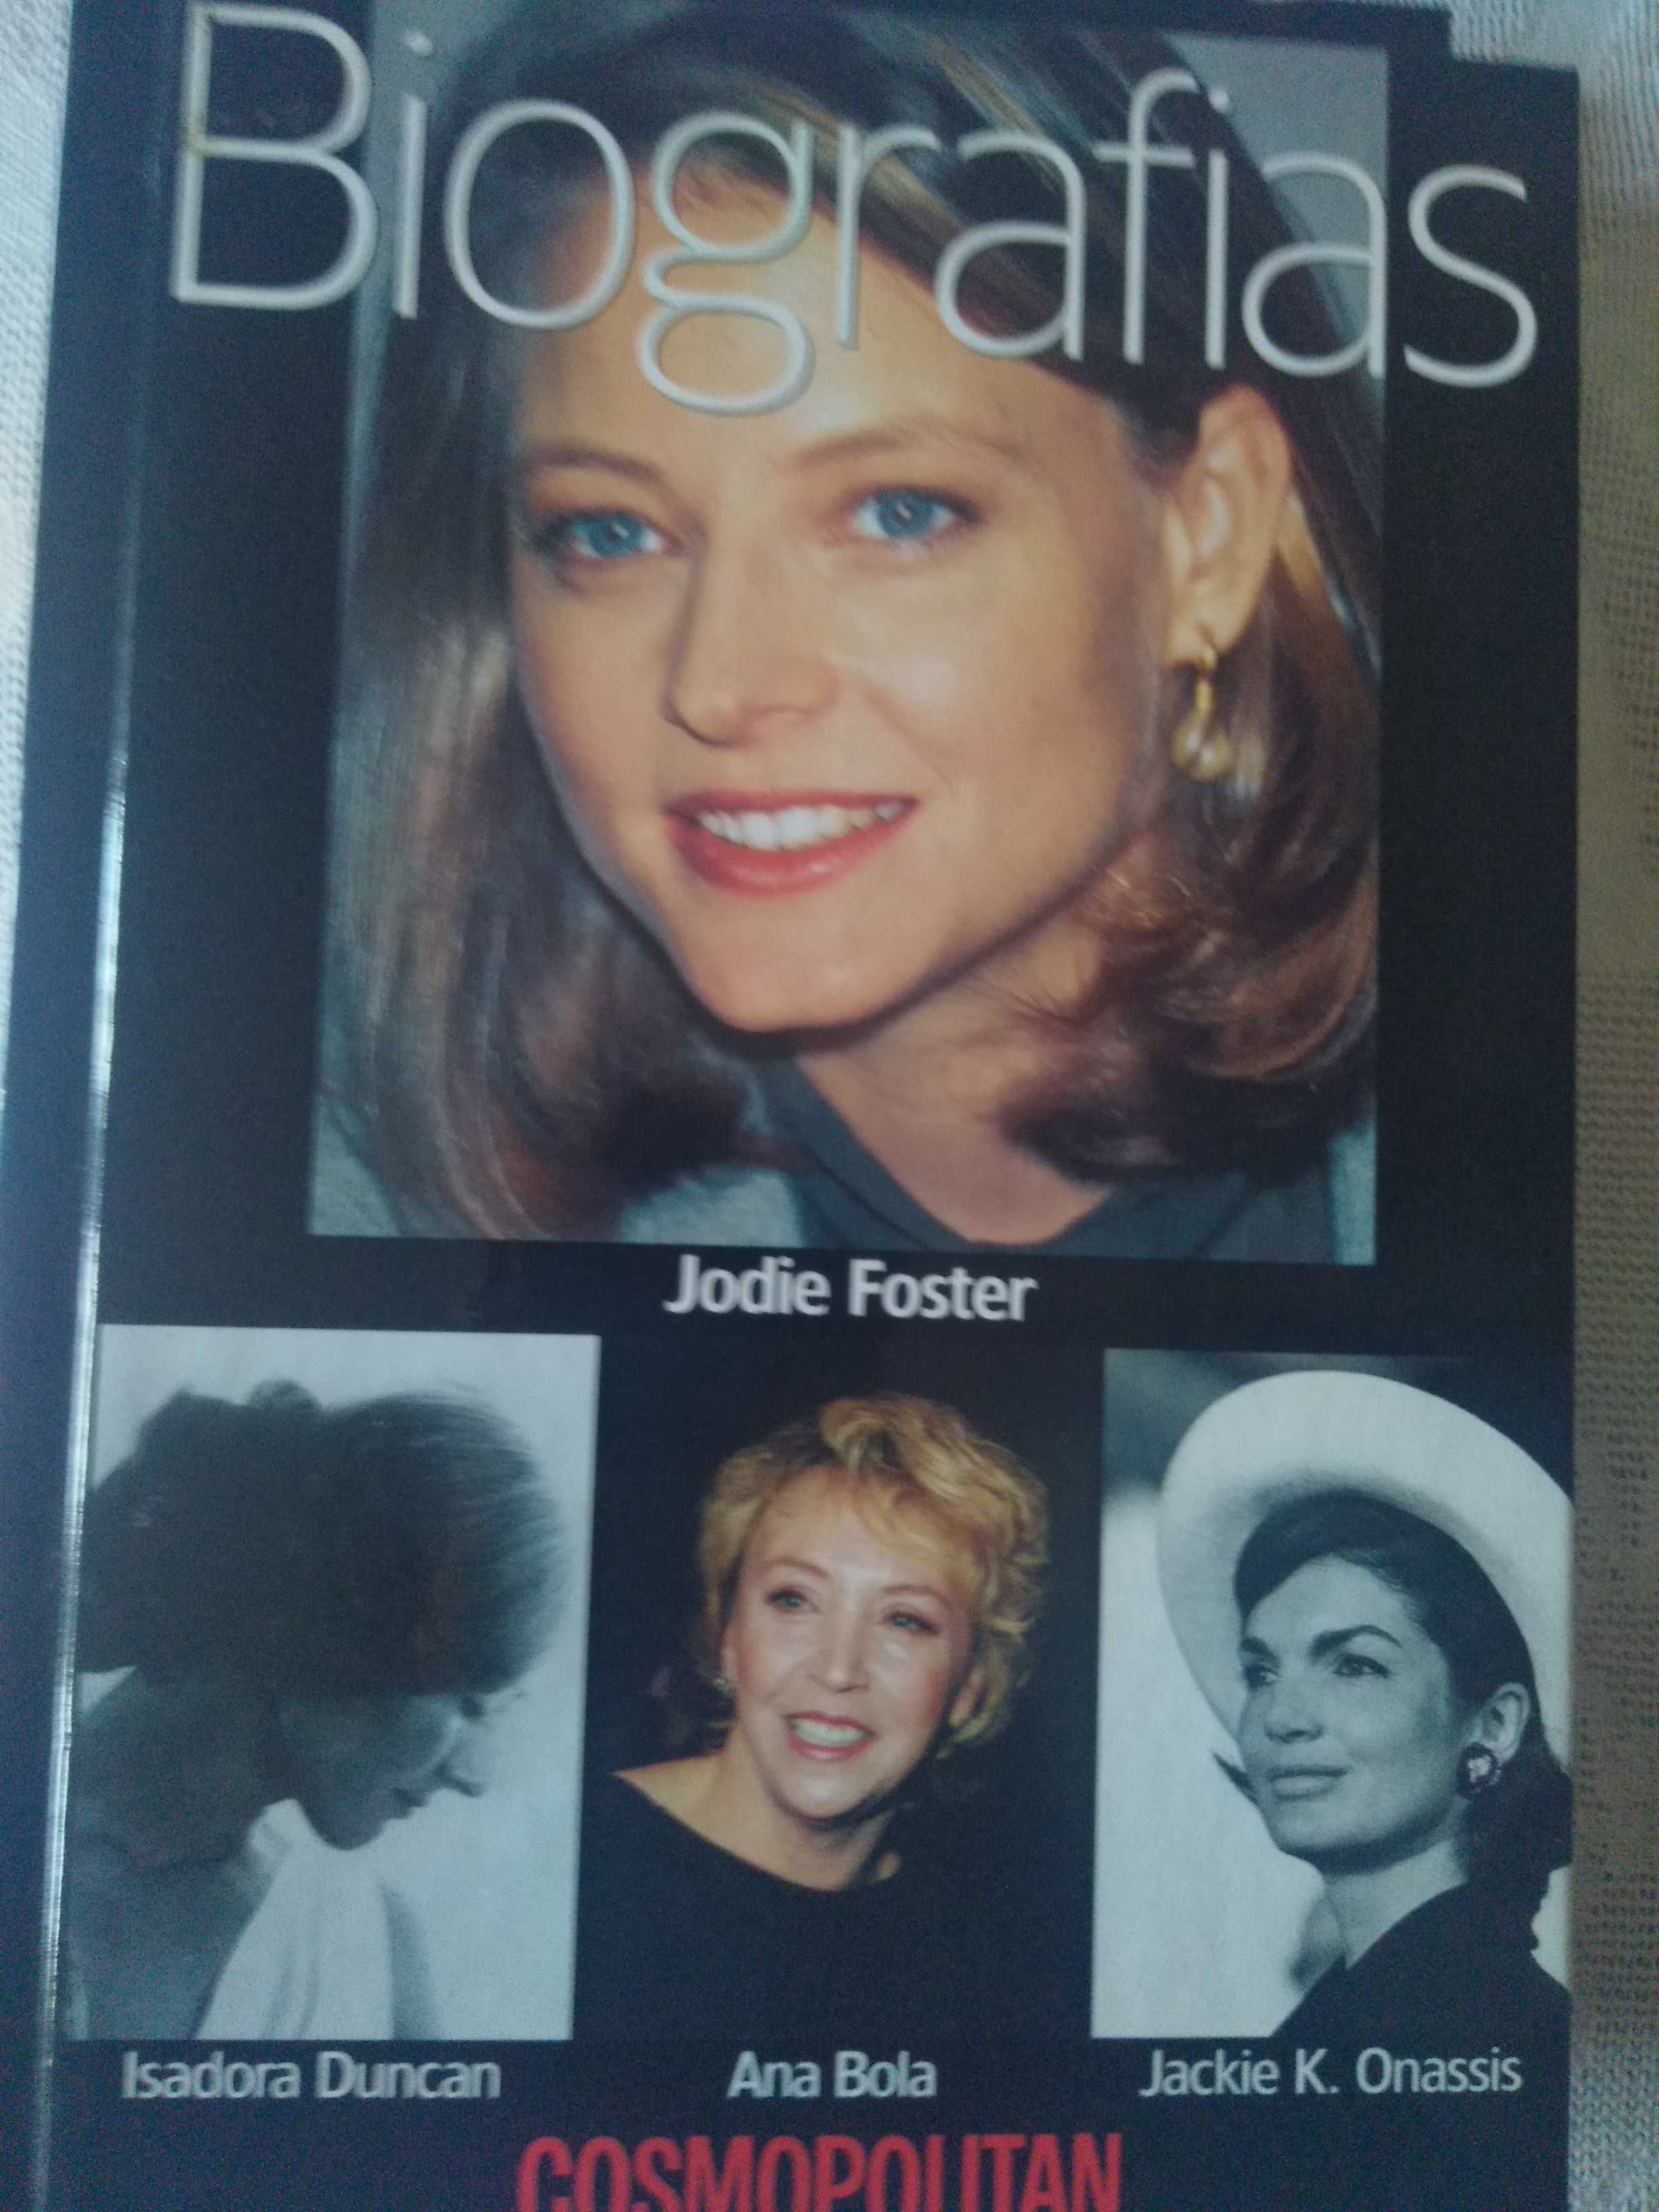 4 Biografias de Sharon Stone, Jodie Foster, Uma Thurman e Madonna